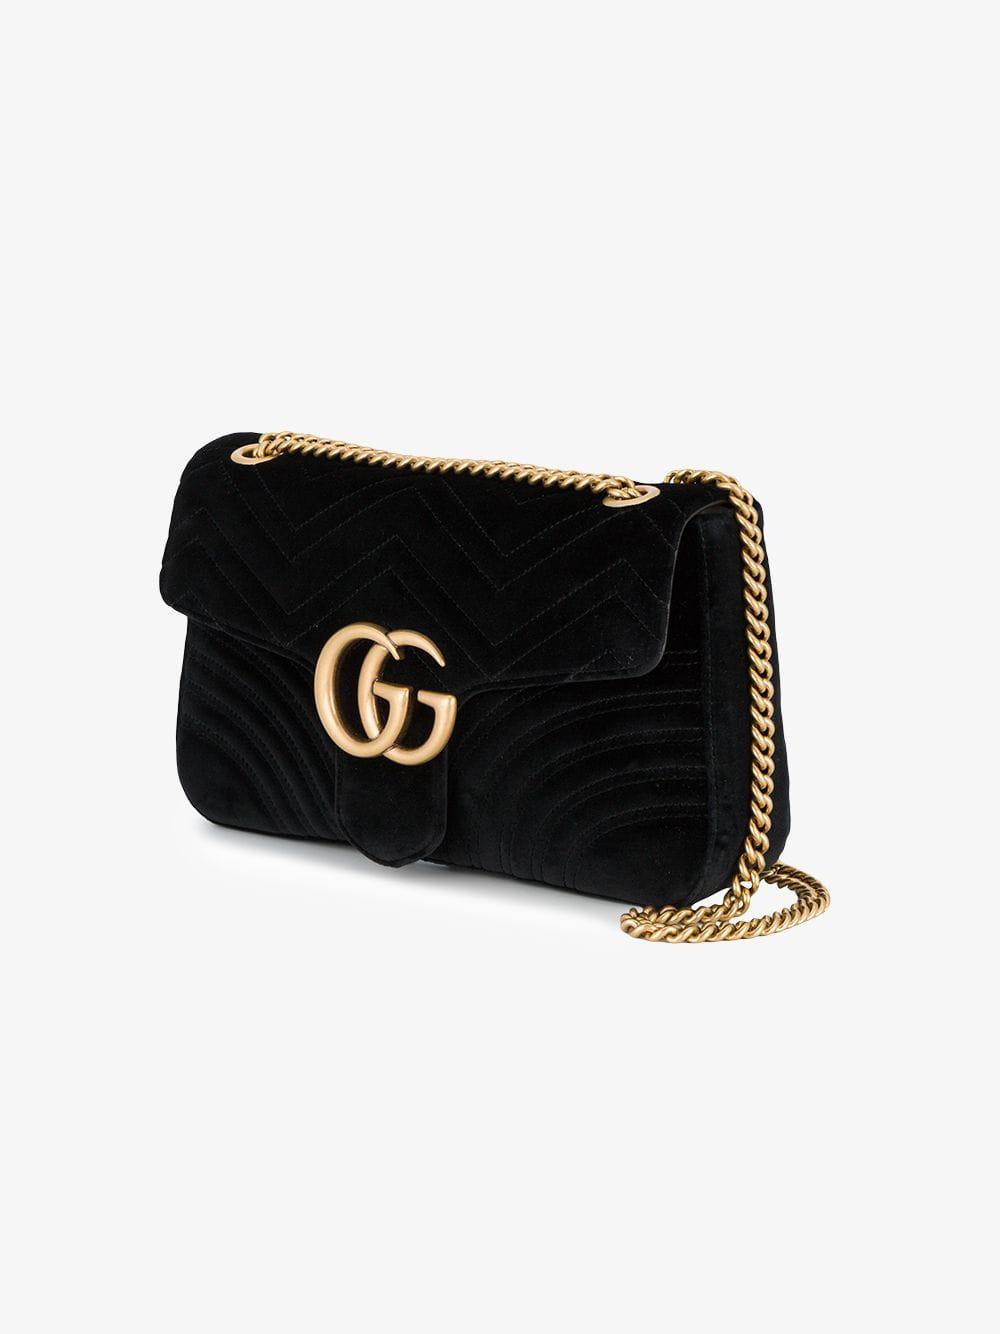 Gucci Marmont 2.0 Velvet Shoulder Bag in Black - Lyst